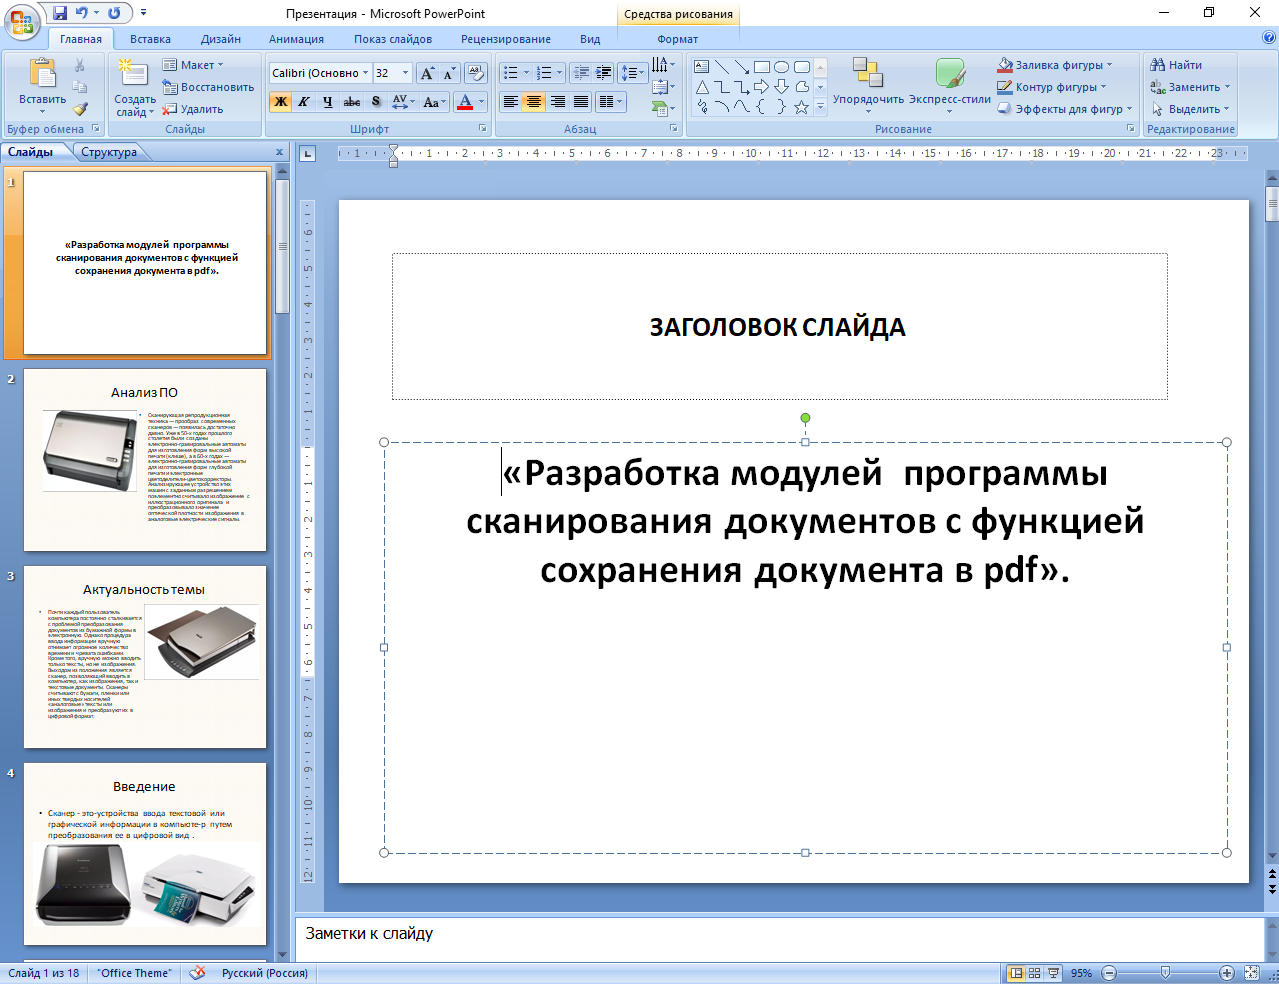 Курсовая работа сканирование и сохранение в pdf